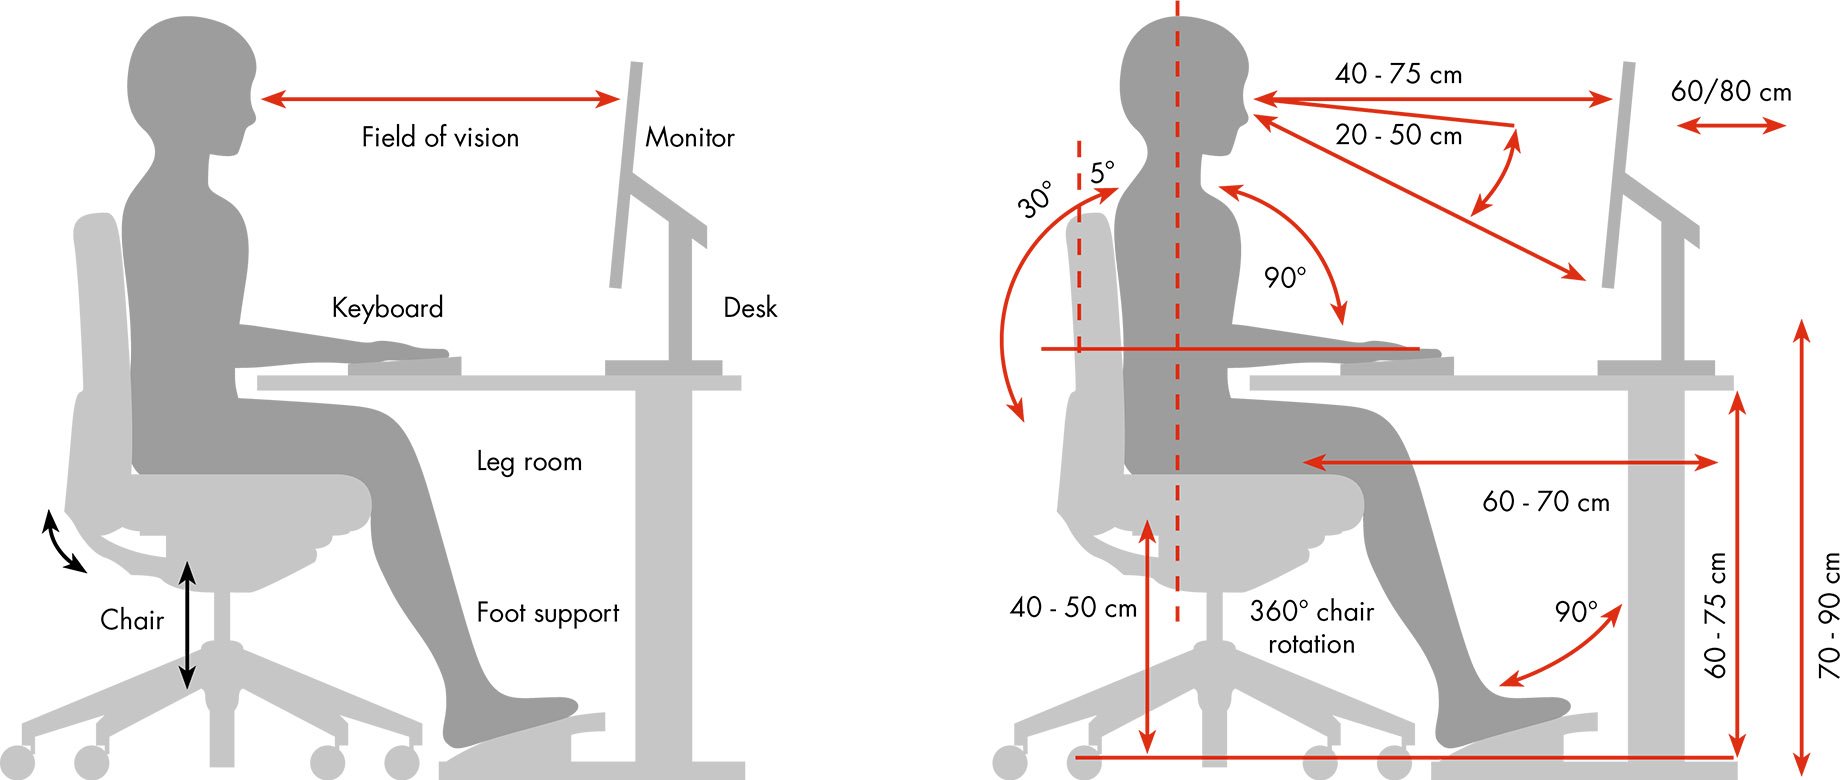 smow-planungsthemen-buero-ergonomie-grafik-sitzhaltung-en-2